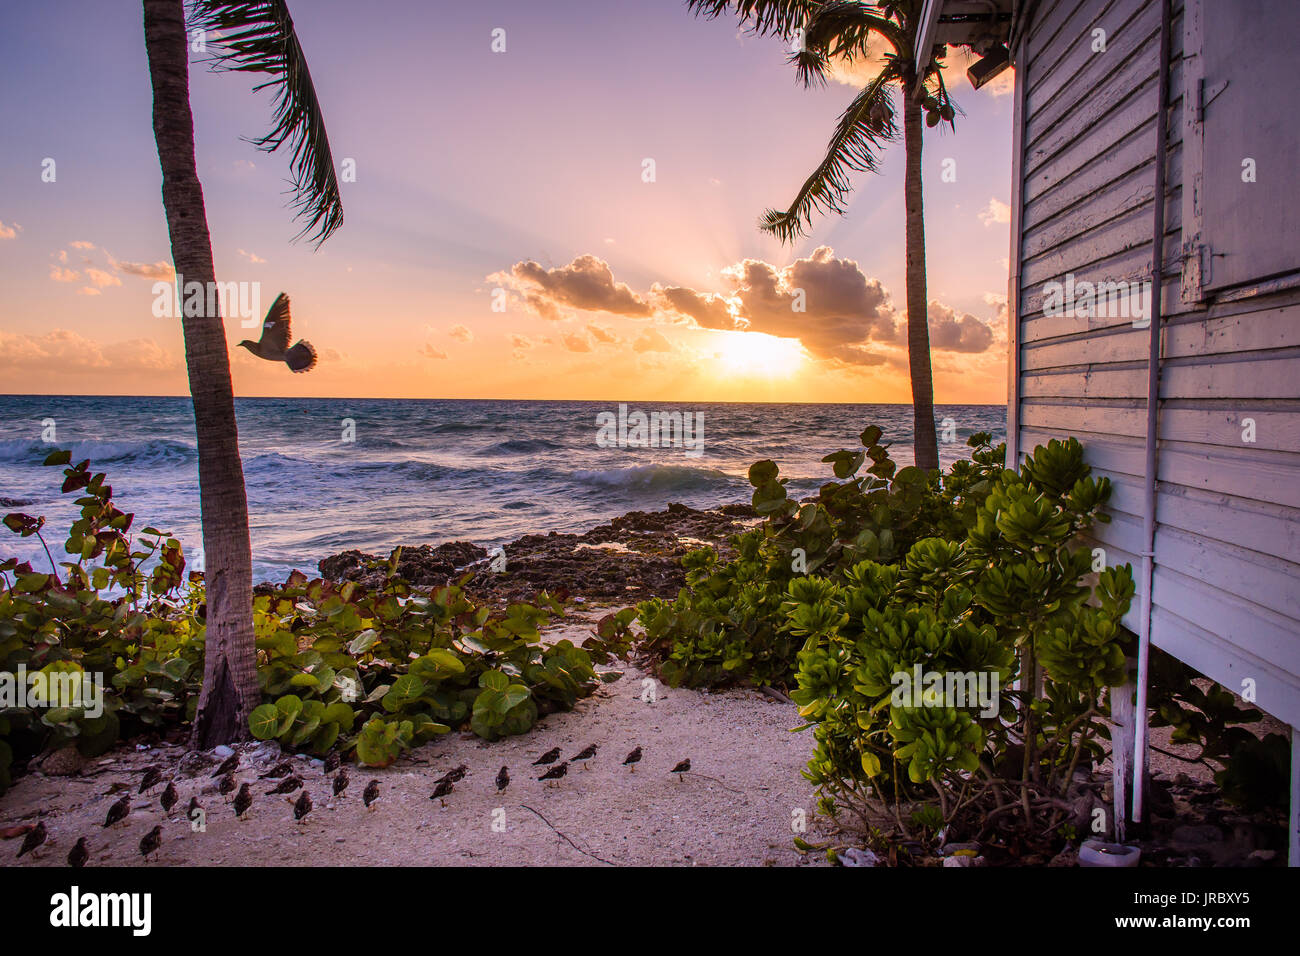 Gli uccelli catturati in un bellissimo tramonto nelle isole Cayman. Foto Stock